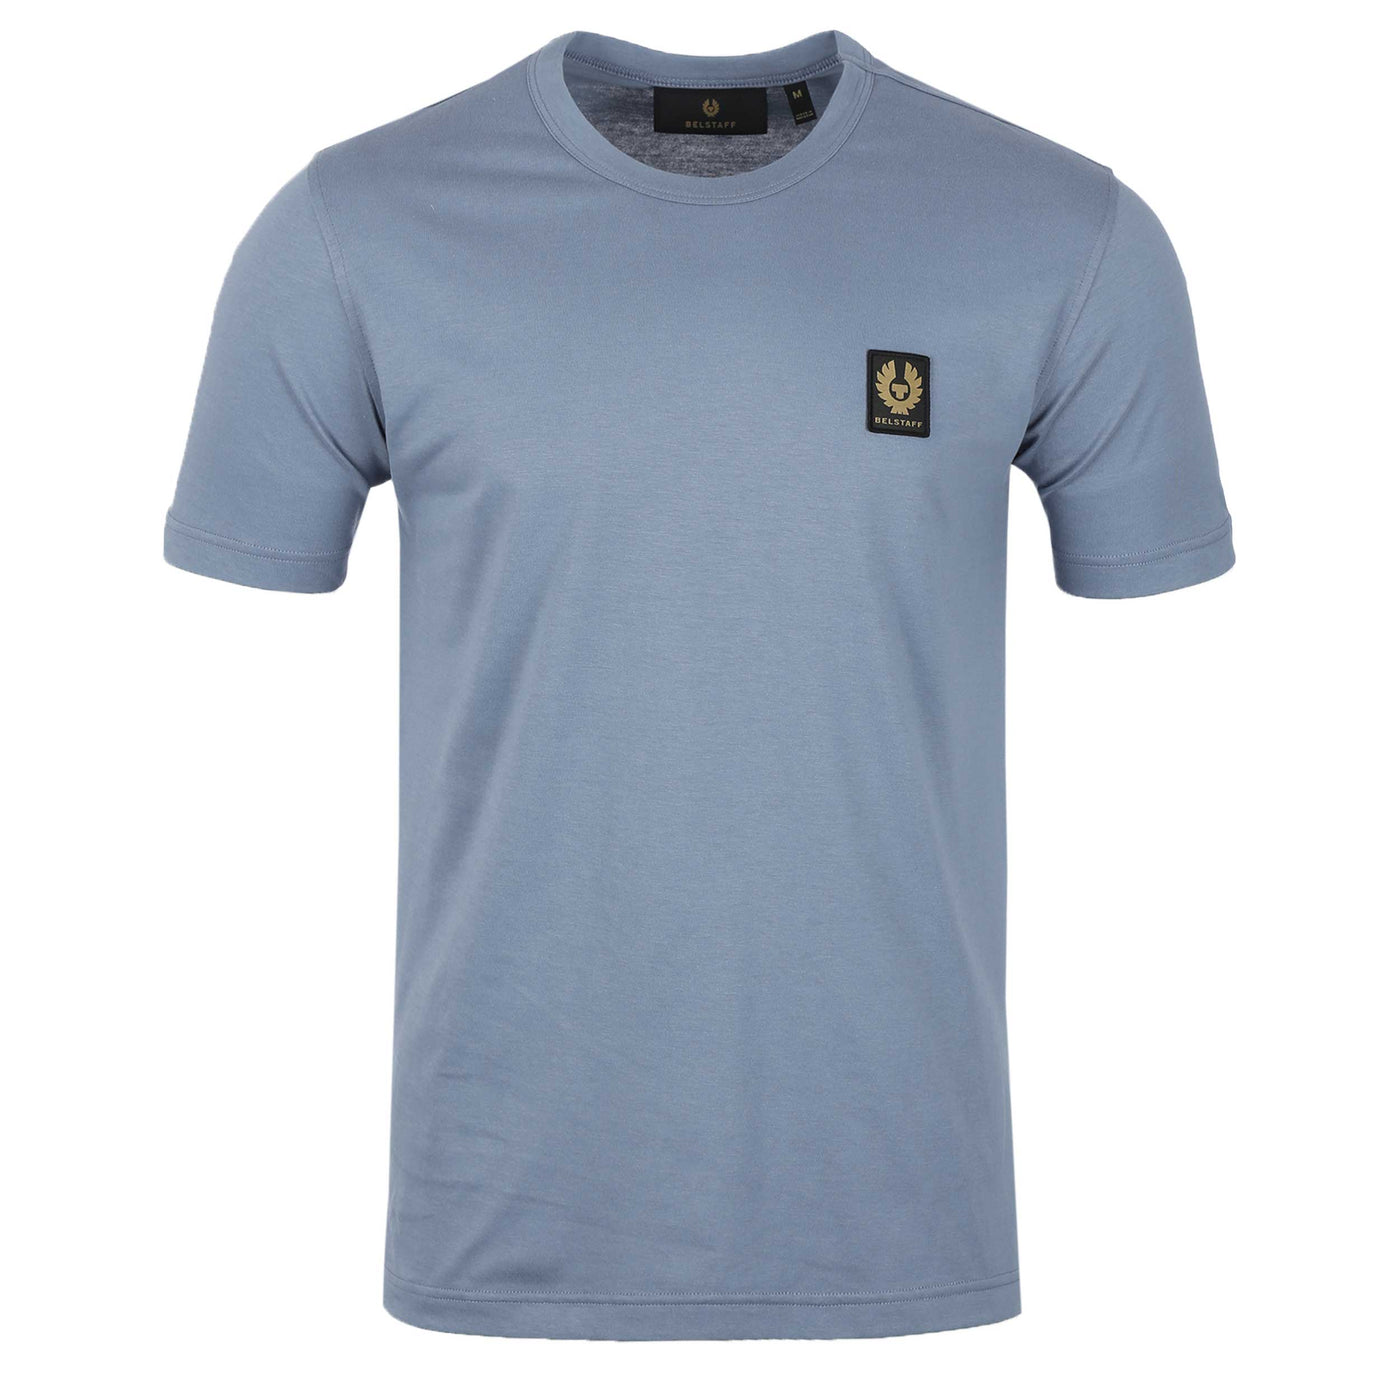 Belstaff Classic T-Shirt in Blue Flint